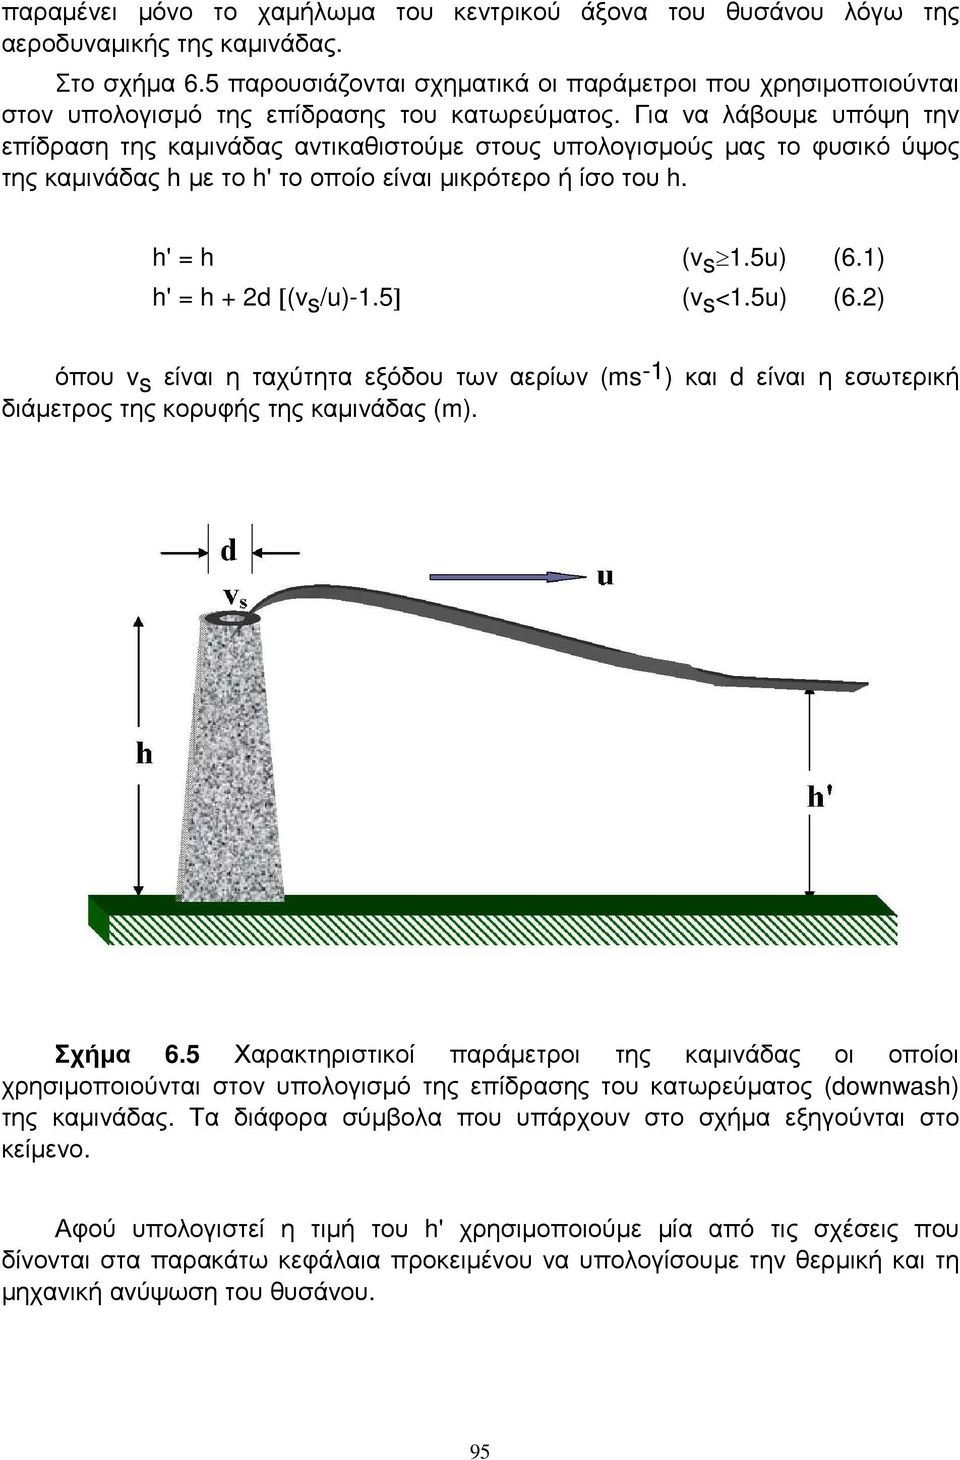 Για να λάβουµε υπόψη την επίδραση της καµινάδας αντικαθιστούµε στους υπολογισµούς µας το φυσικό ύψος της καµινάδας h µε το h' το οποίο είναι µικρότερο ή ίσο του h. h' = h (vs 1.5u) (6.